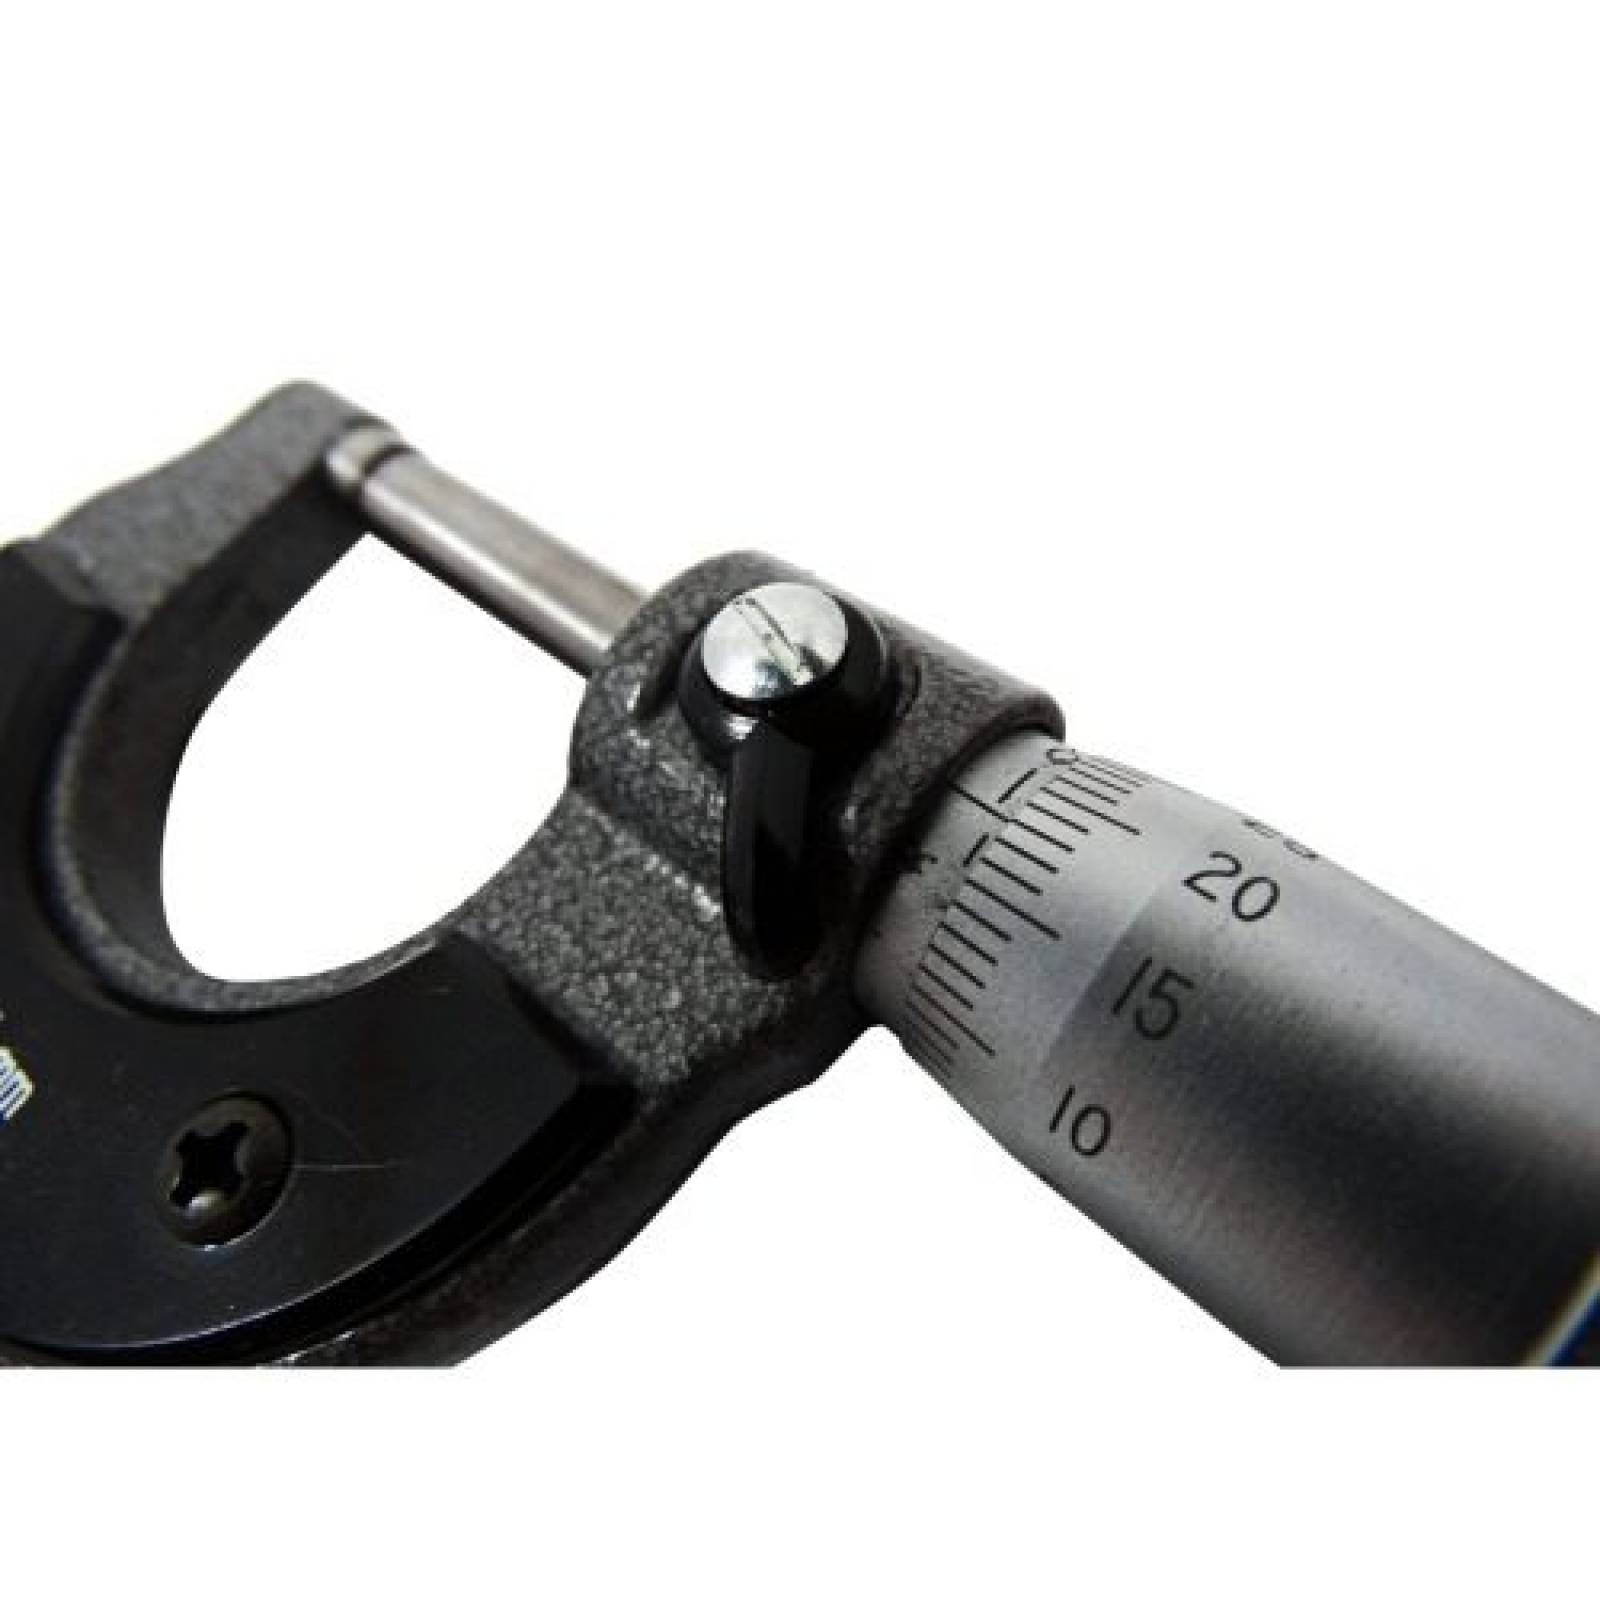 Calibrador Micrometro Resistente 0 a 25mm Obi 264105